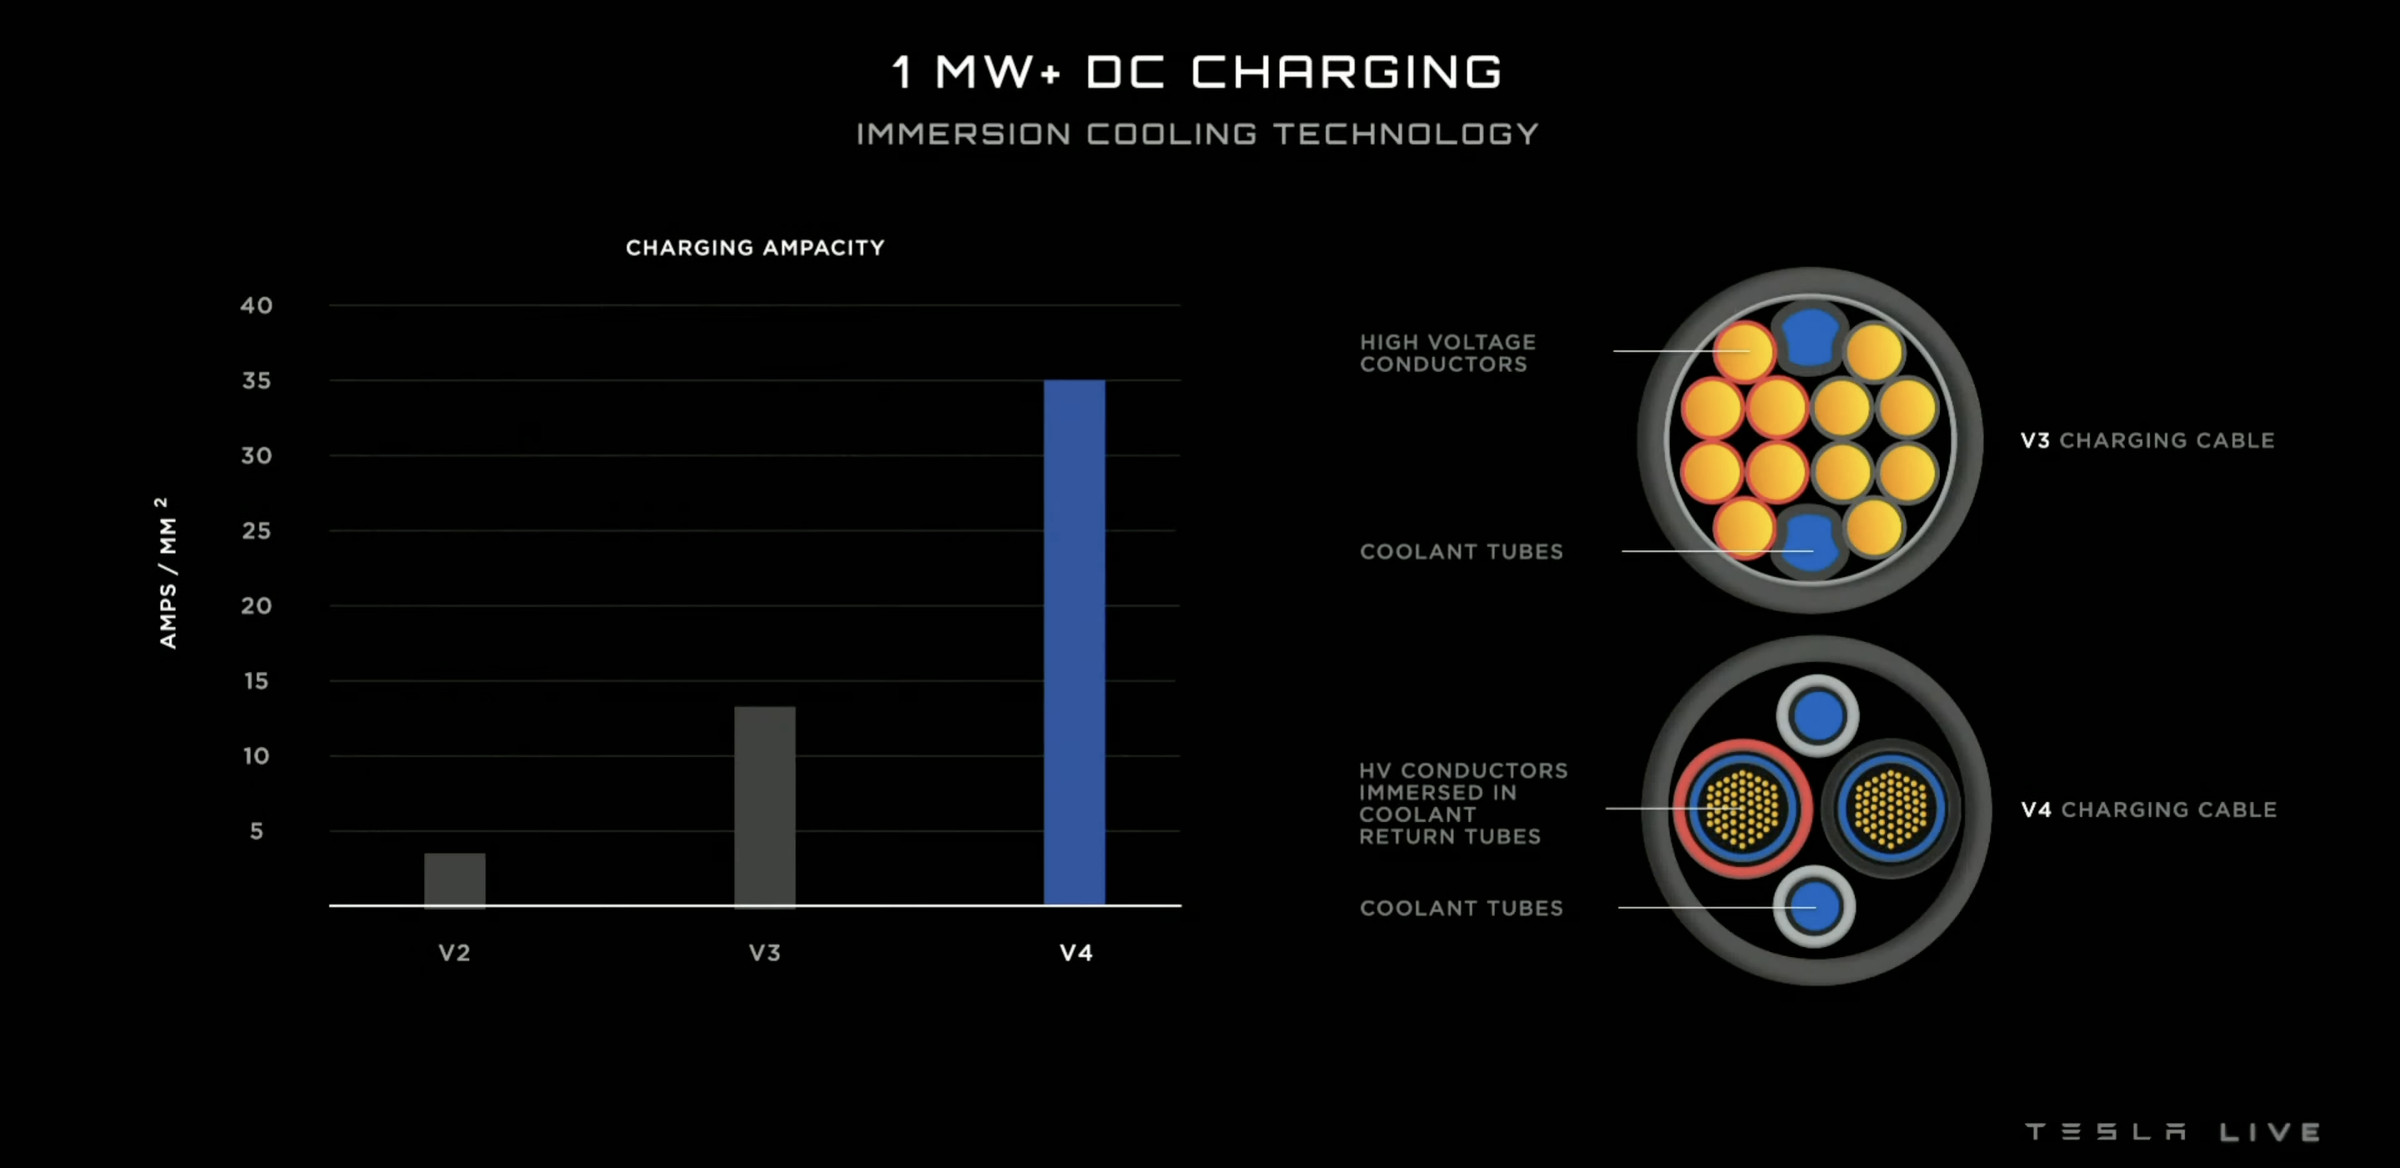 Diapositiva que muestra un gráfico de la ampacidad de carga del cable de carga V4 de Tesla, que alcanza los 35 amperios por milímetro cuadrado, y que muestra cómo los conductores están sumergidos en los tubos de refrigerante.